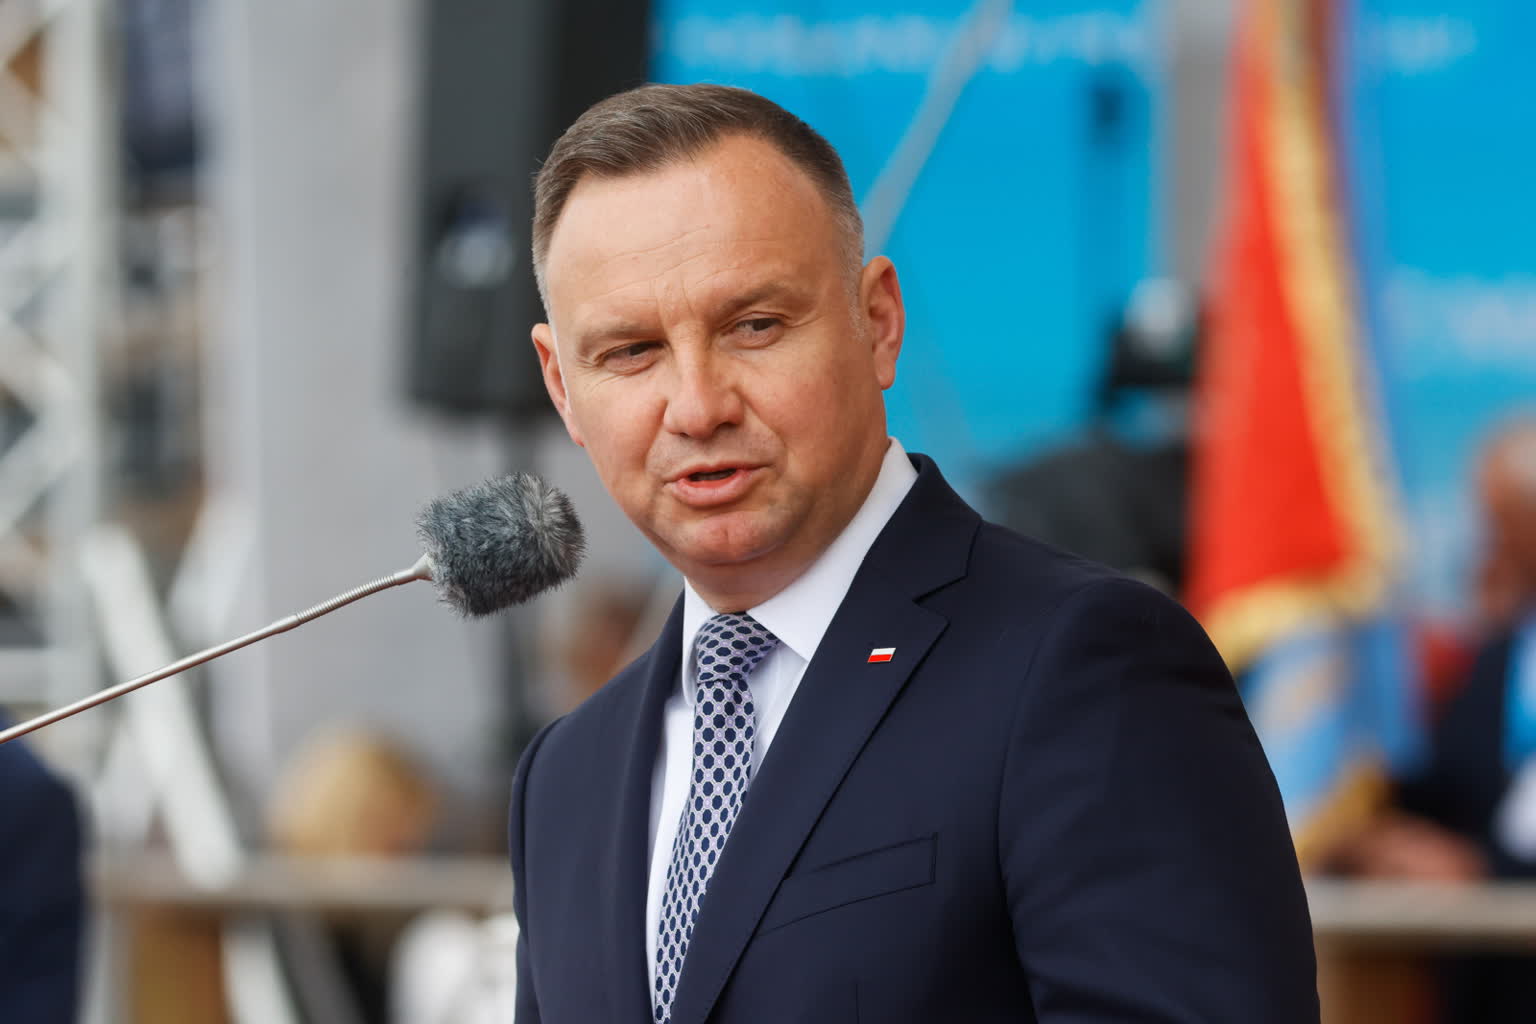 Il presidente polacco Duda sprona gli alleati europei: "Dobbiamo inviare più armi e carri armati a Kiev"